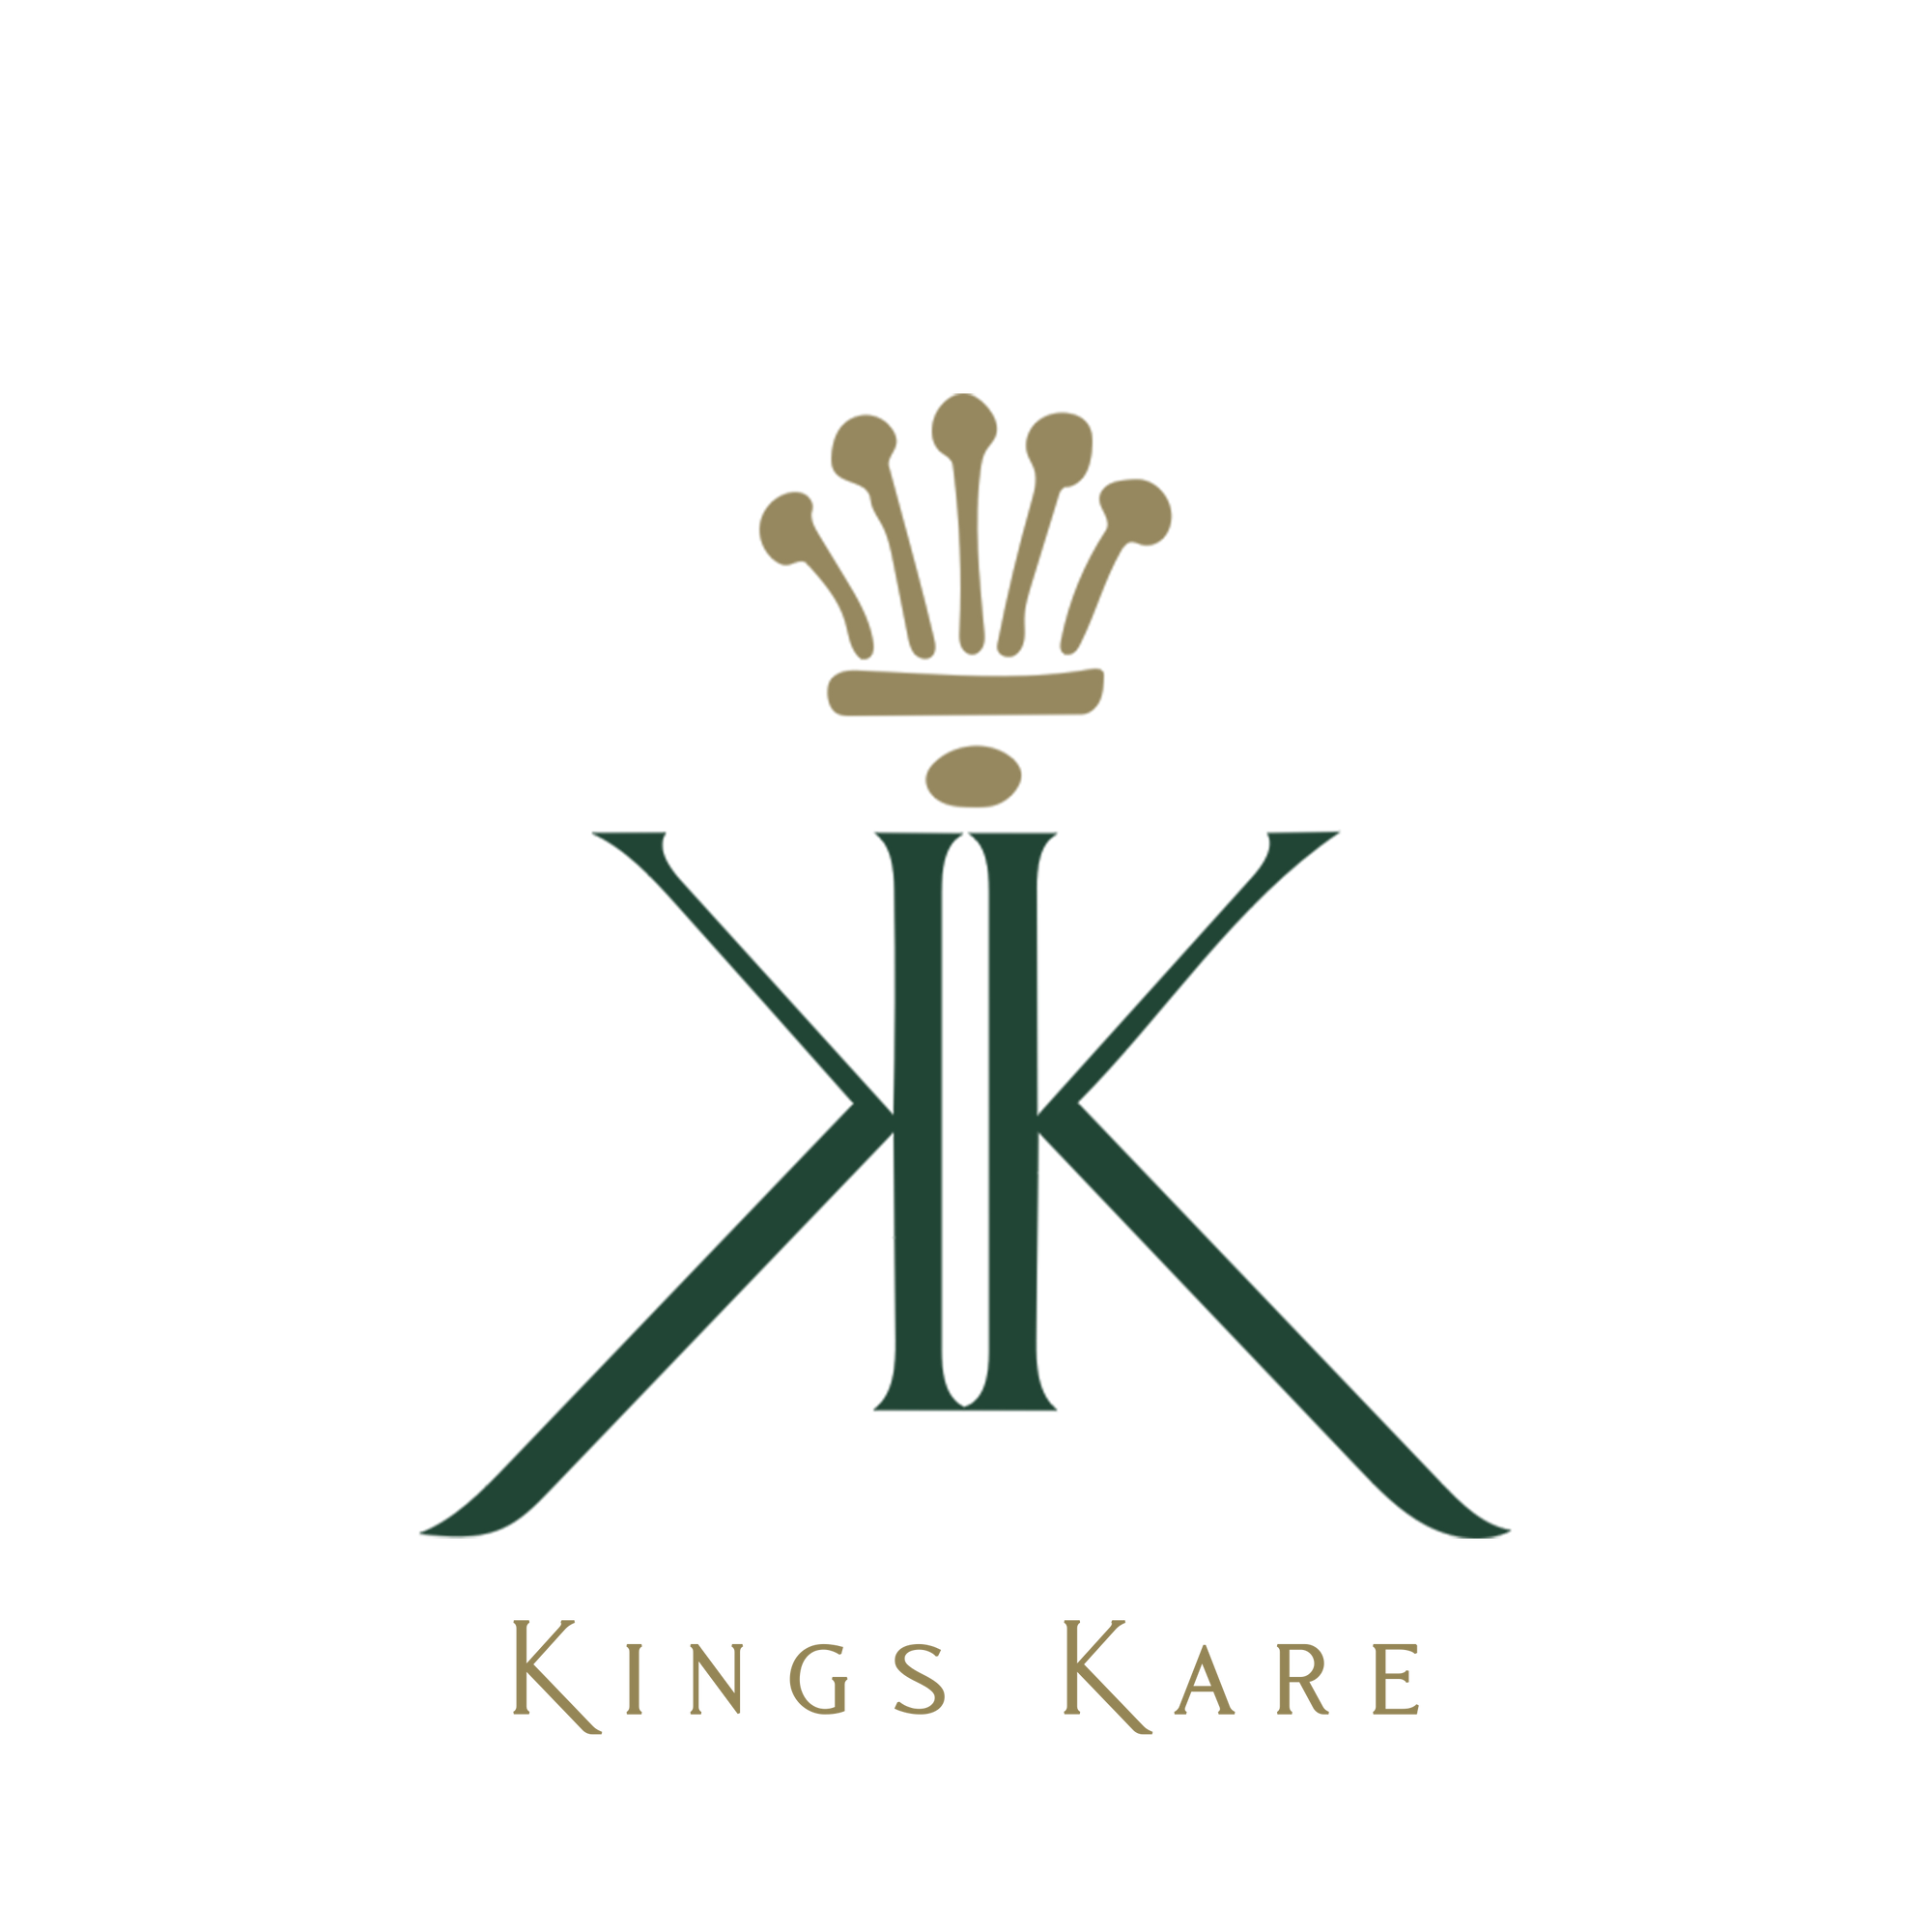 Kings Kare